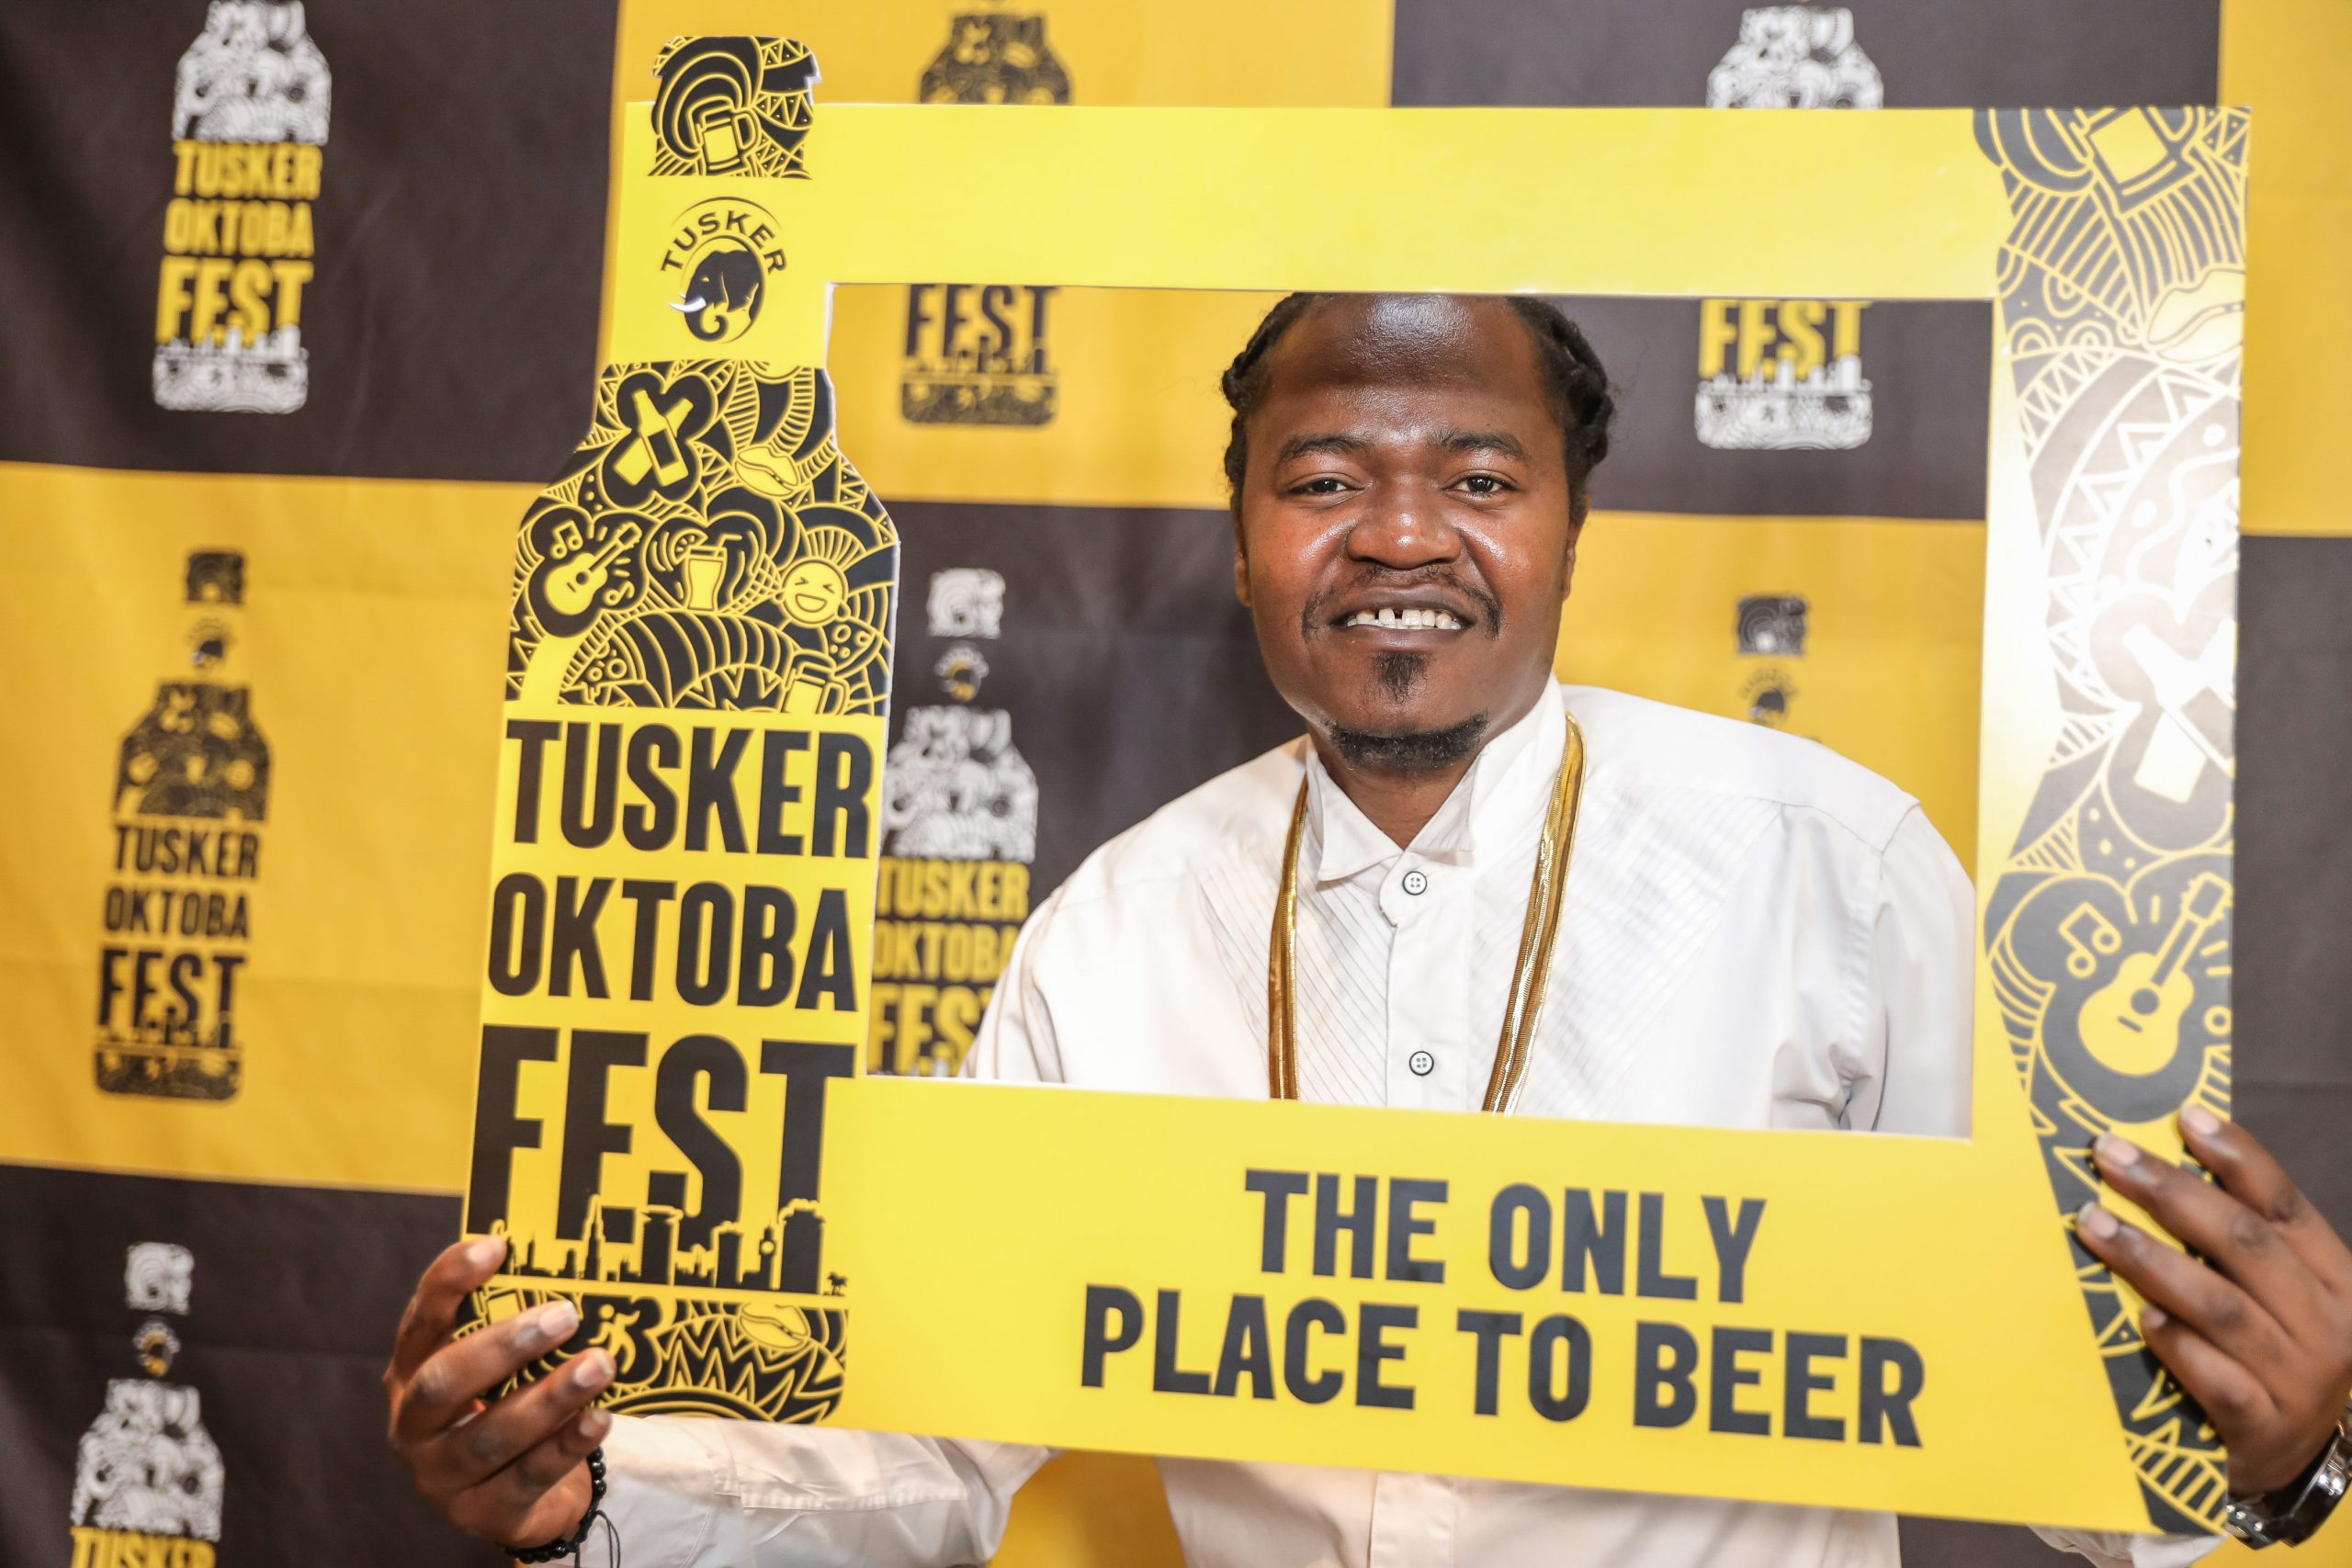 Celebrated Kenyan Kenyan hip hop artist, Juakali Pose with a Tusker Oktoba Fest Frame during the unveil the 2 days Festival held at the Blue Door Beer Garden. www.businesstoday.com